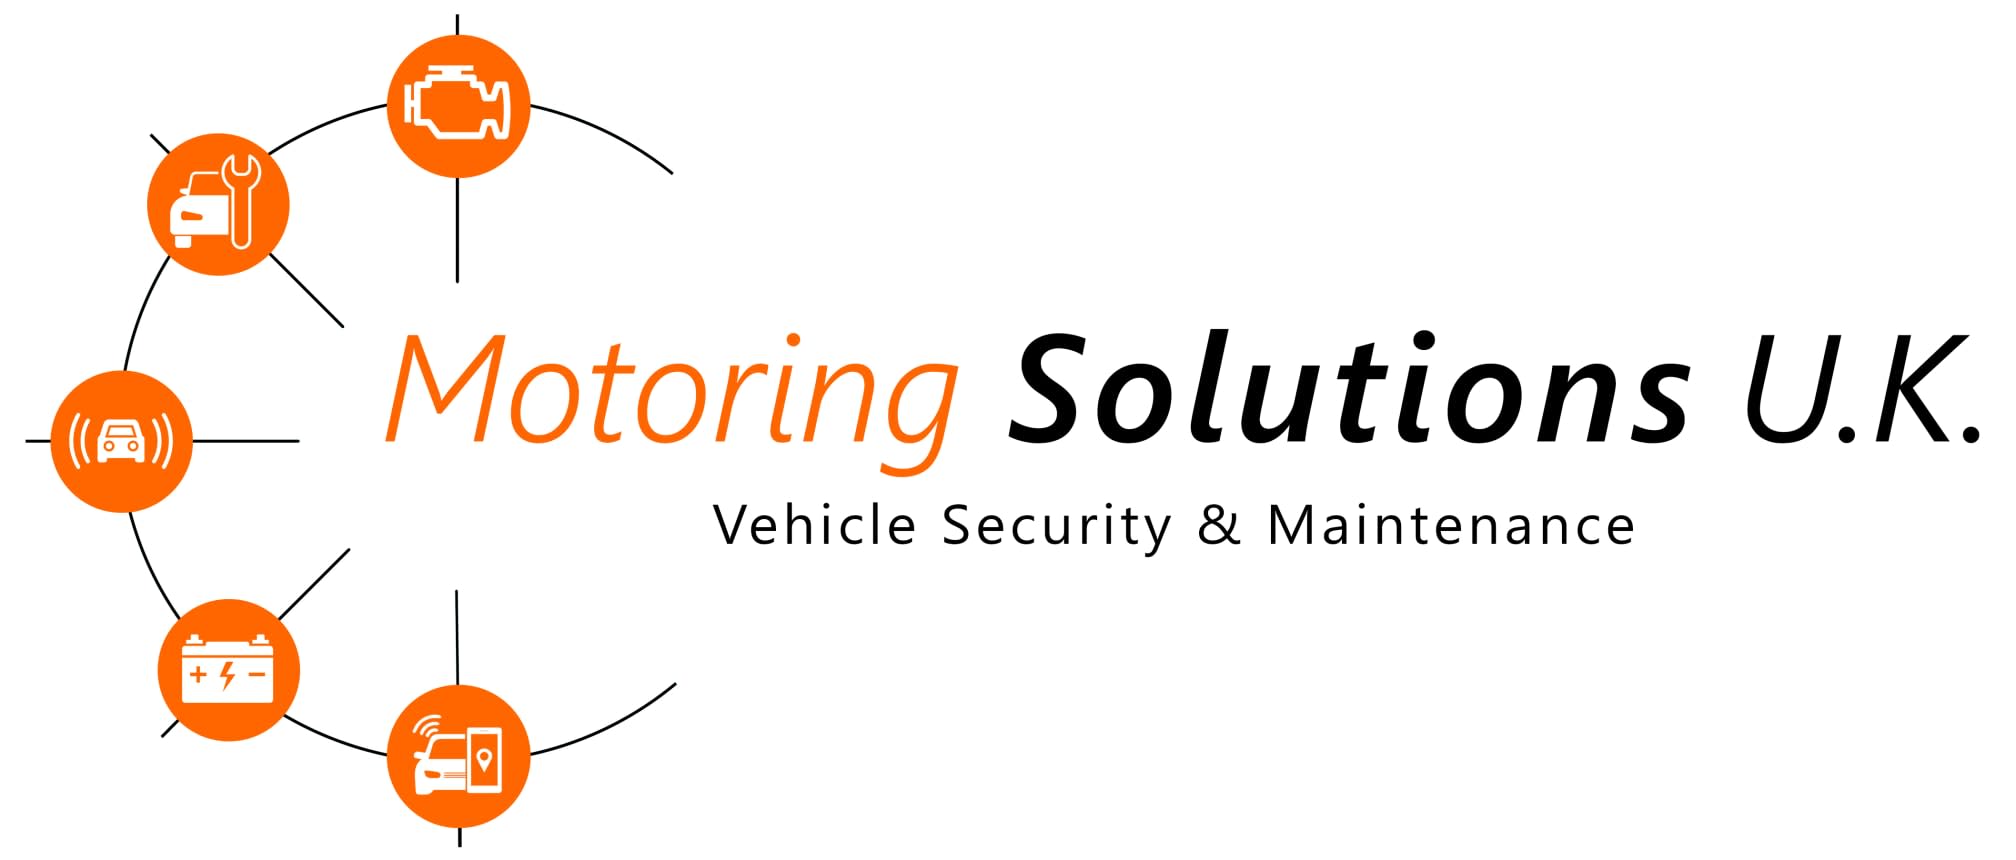 Images Motoring Solutions U.K.